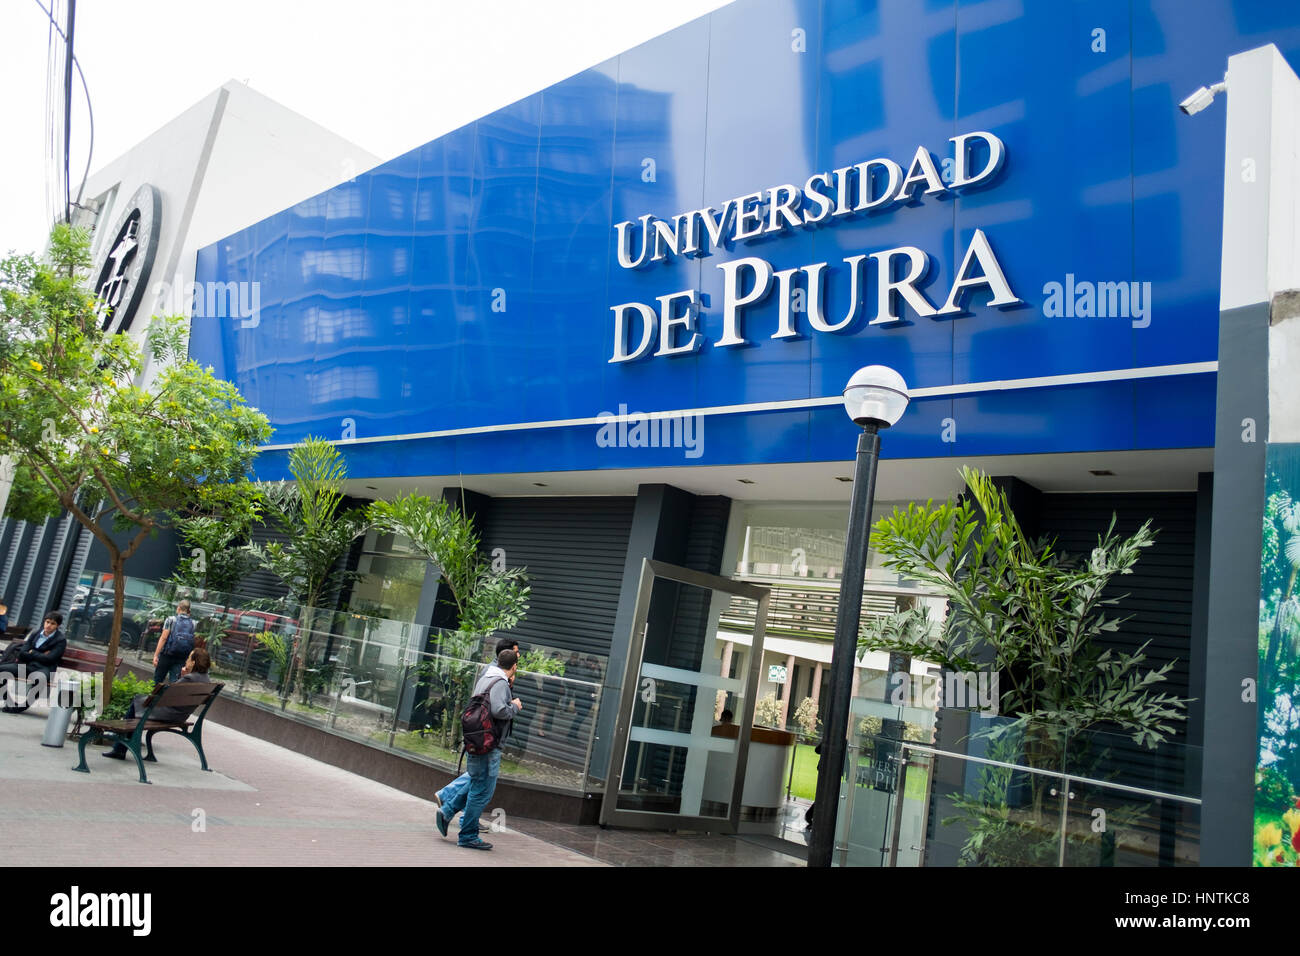 The Universidad de Piura is a private university in Peru. Lima Stock Photo